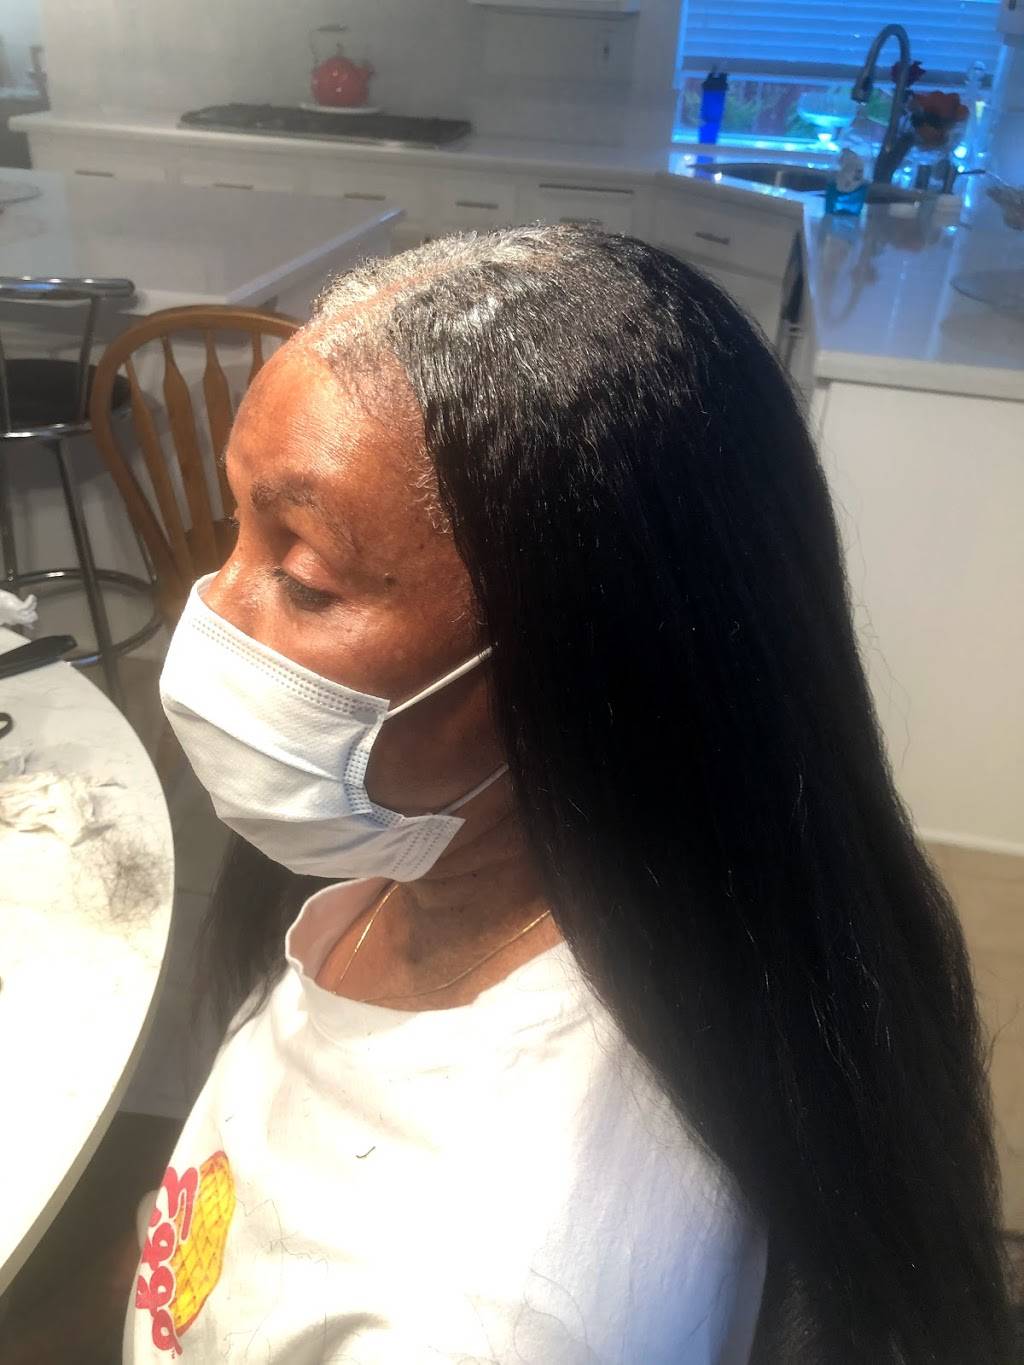 Hollywood soulsalon ouchless hair braiding | 2799 Health Center Dr, San Diego, CA 92123, USA | Phone: (678) 913-5510